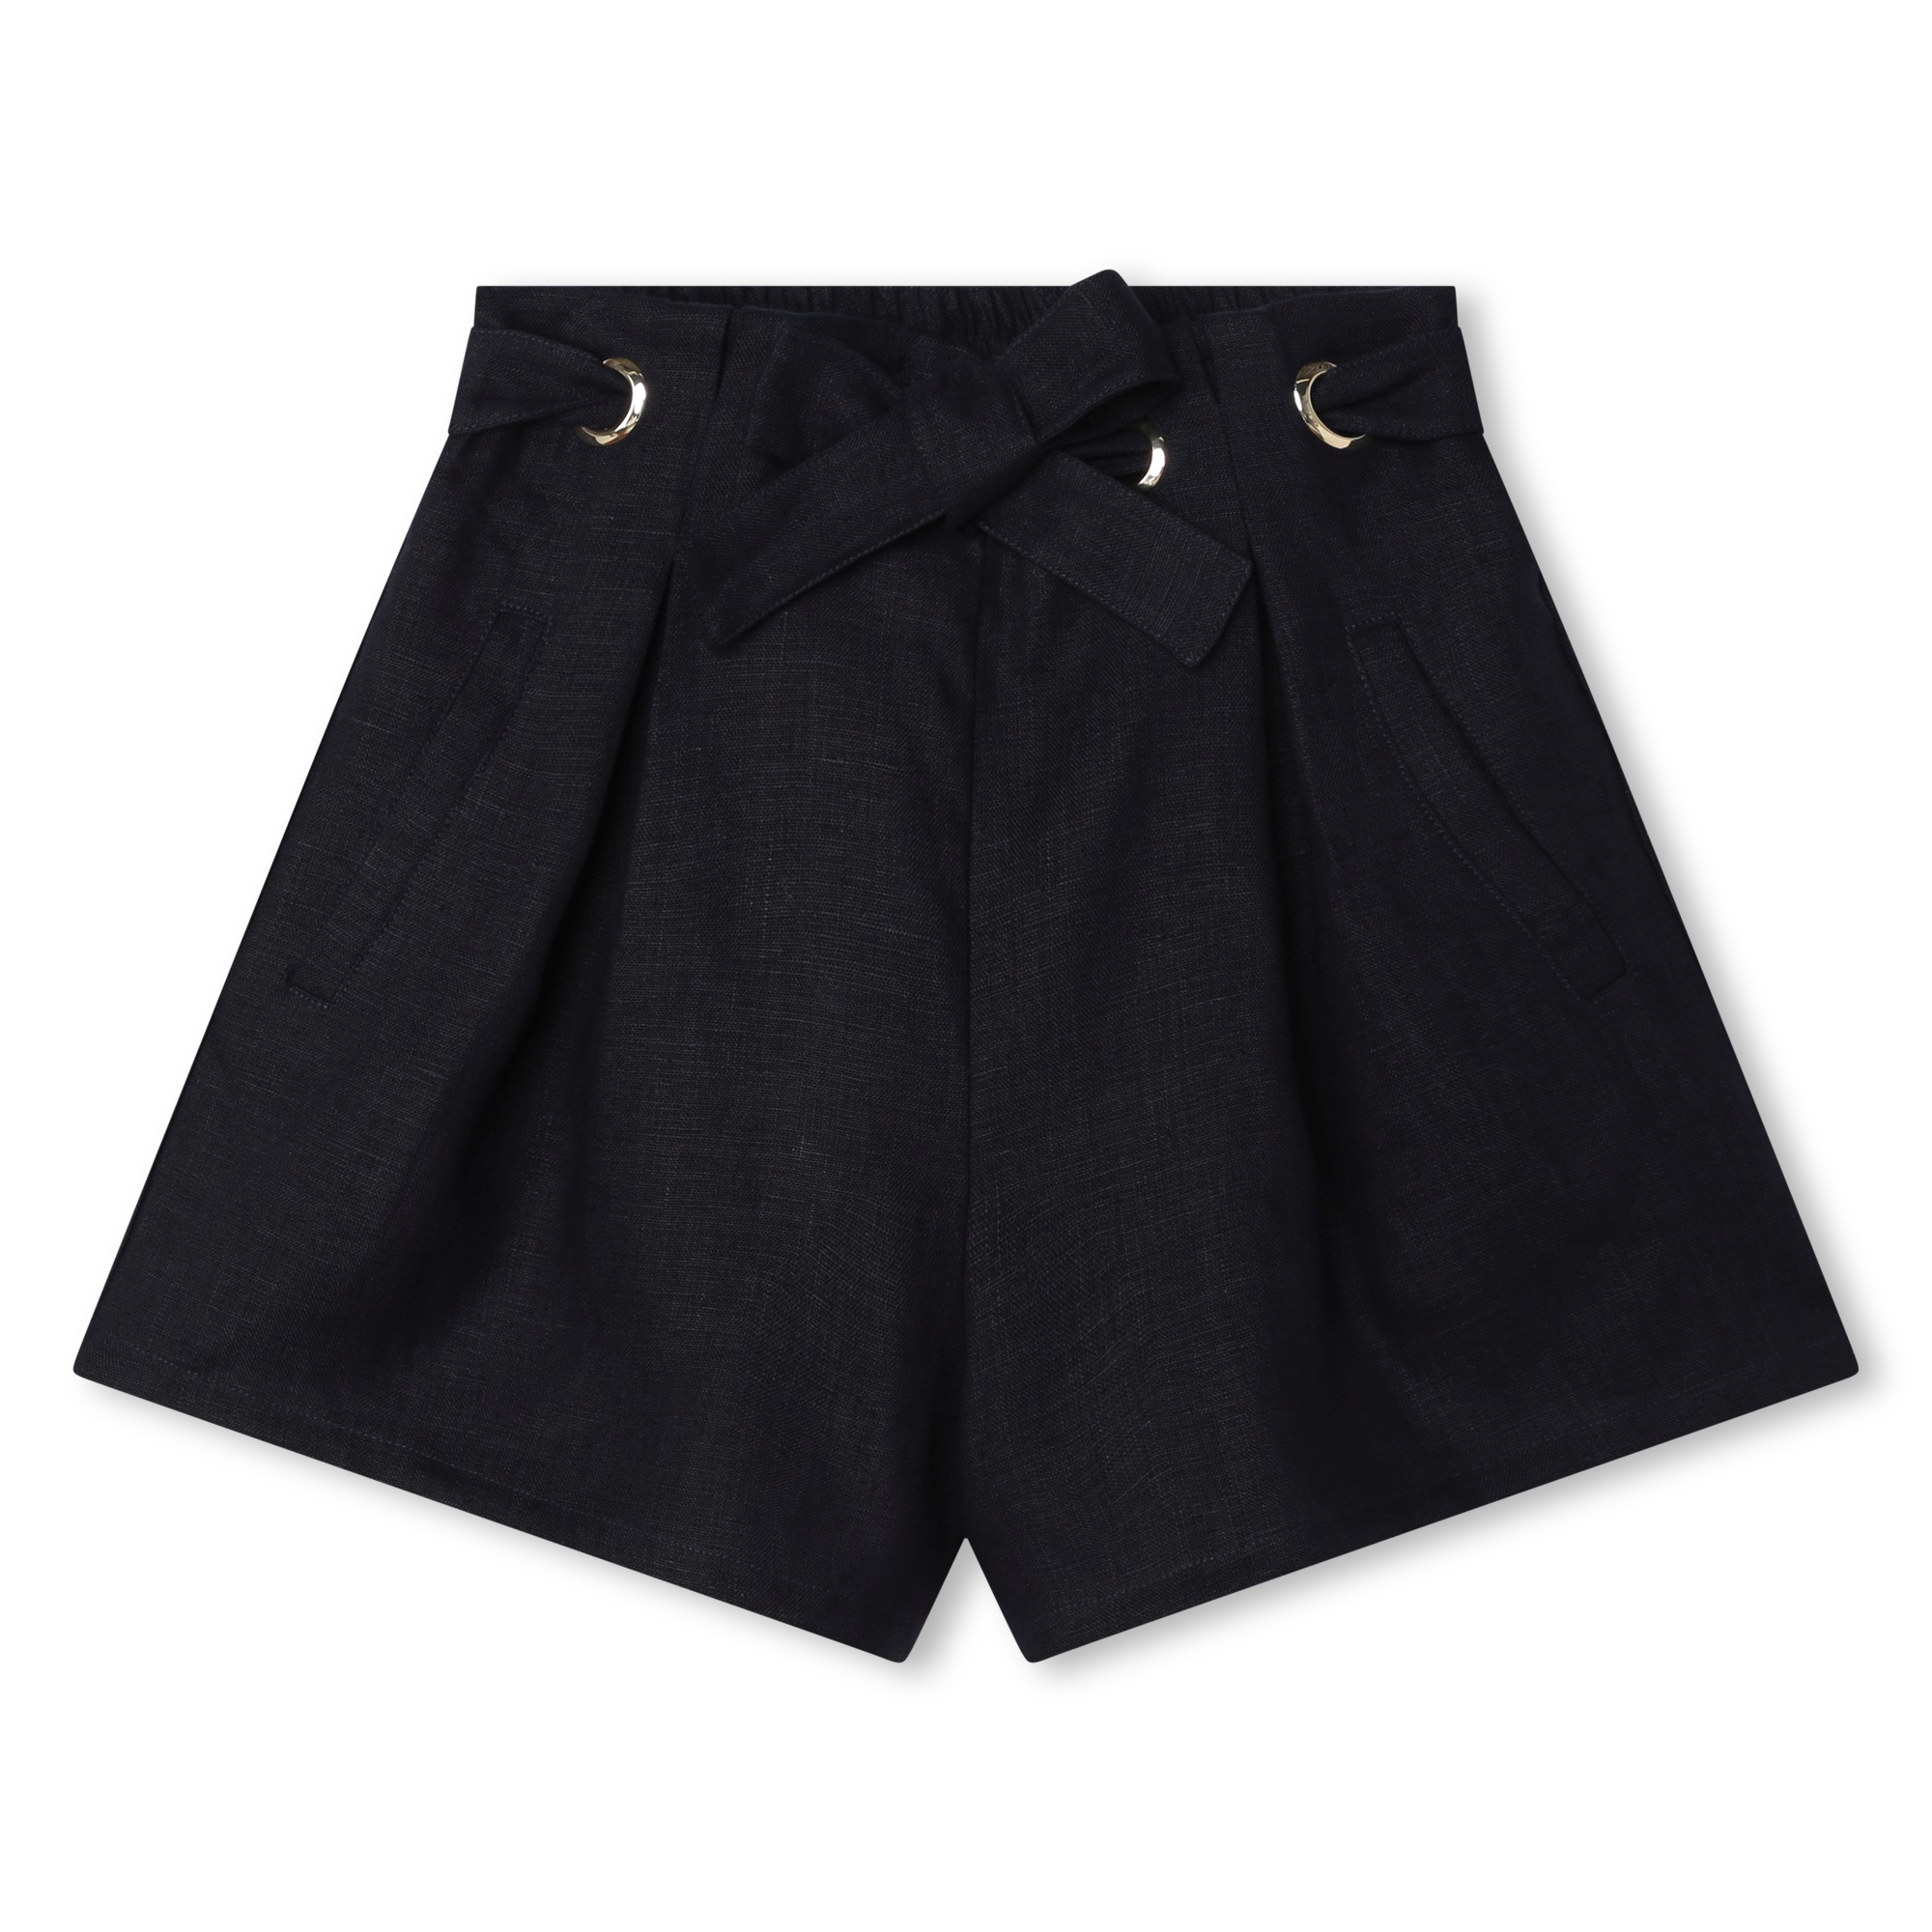 Belted linen shorts CHLOE for GIRL